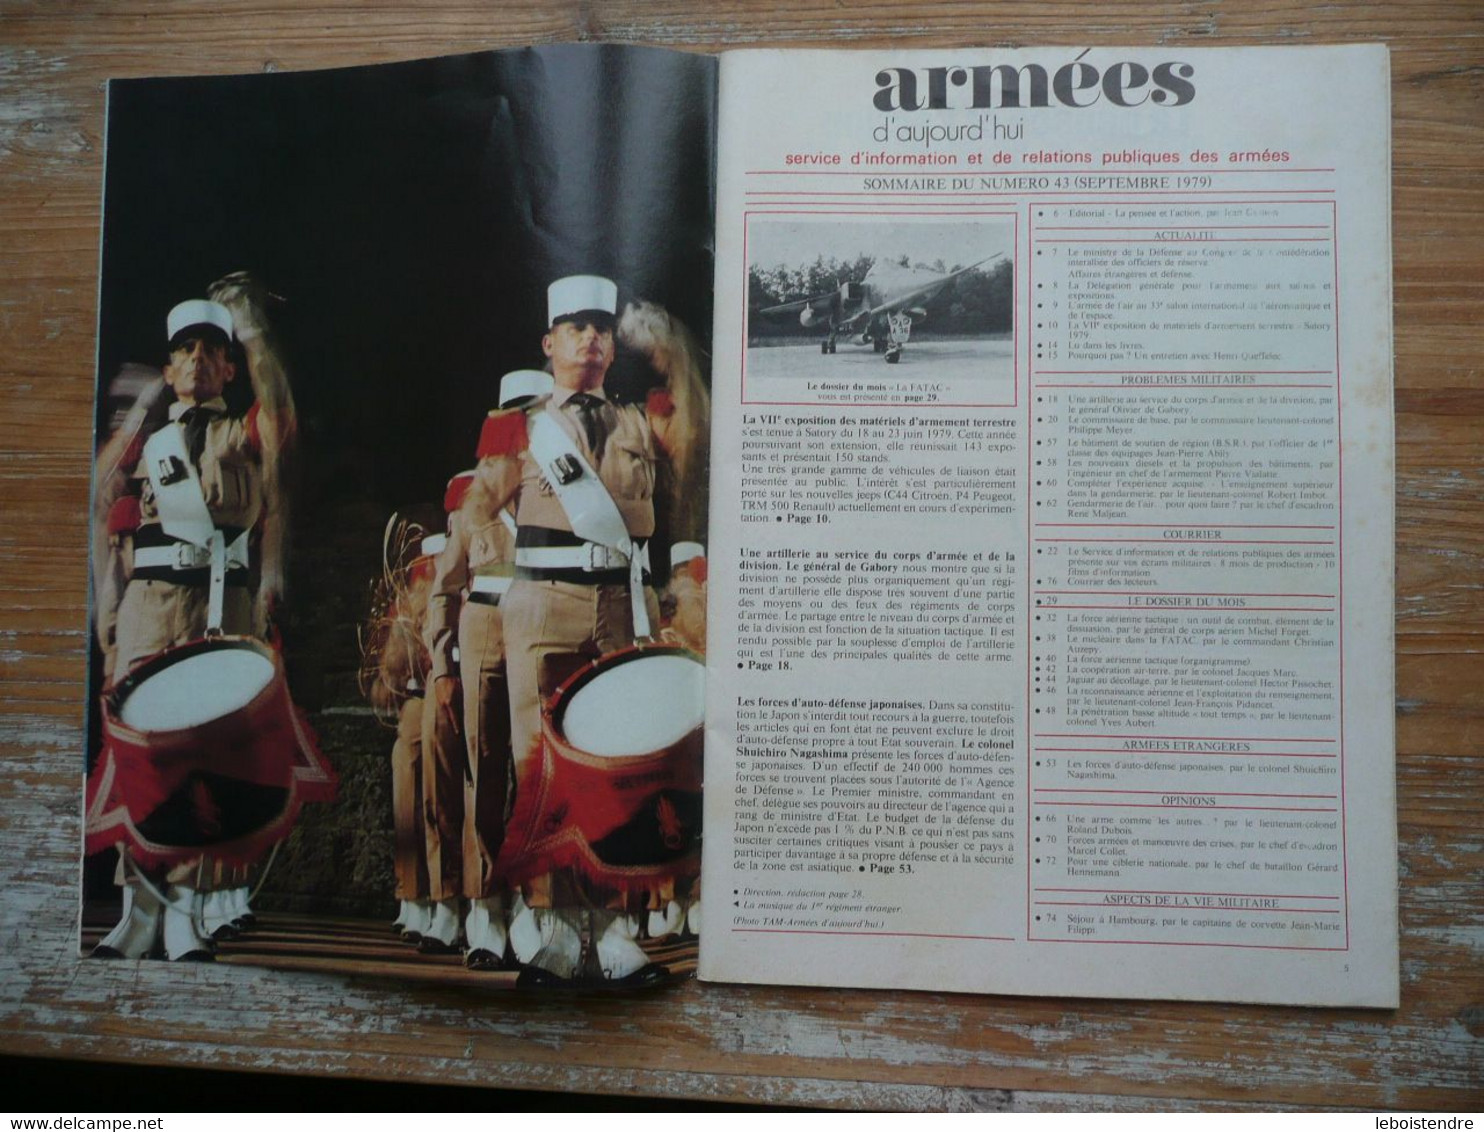 ARMEES D AUJOURD'HUI N° 43 SEPTEMBRE 1979 MENSUEL SATORY 1979 FORCES D AUTO-DEFENSE JAPONAISES FORCE AERIENNE TACTIQUE - Frans